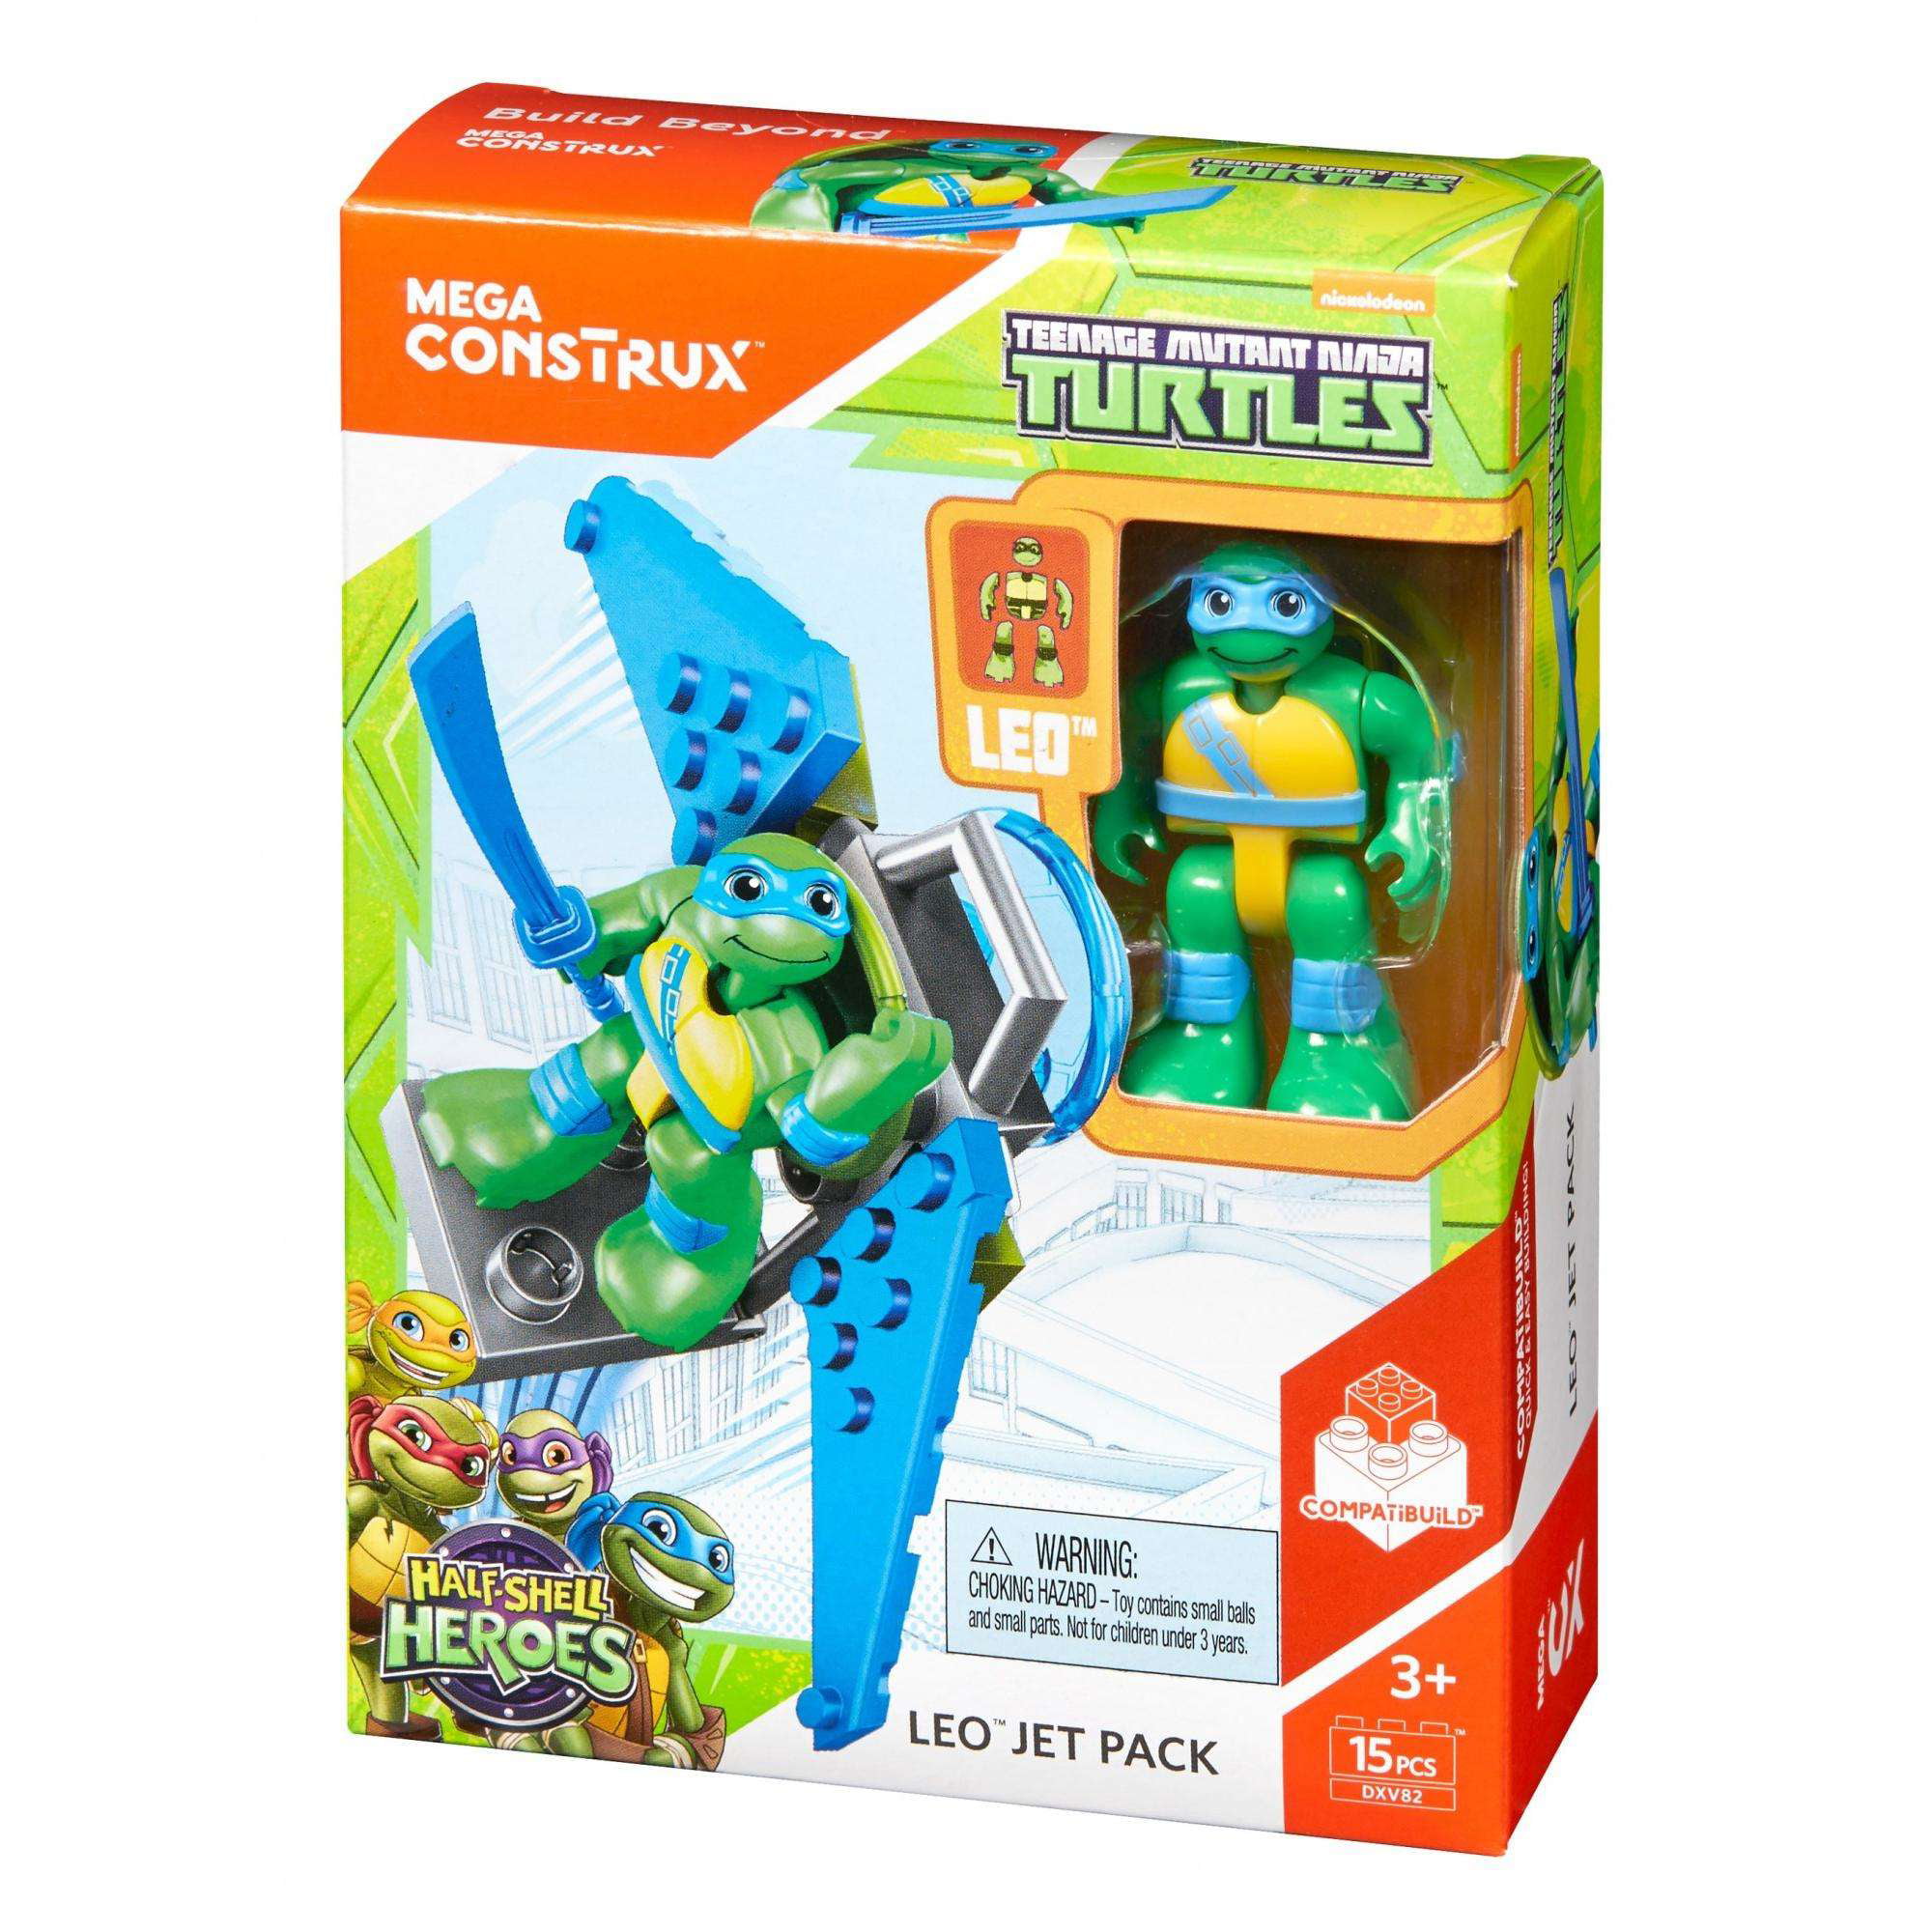 Mega Construx Teenage Mutant Ninja Turtles LEO JET PACK Pack Figure 